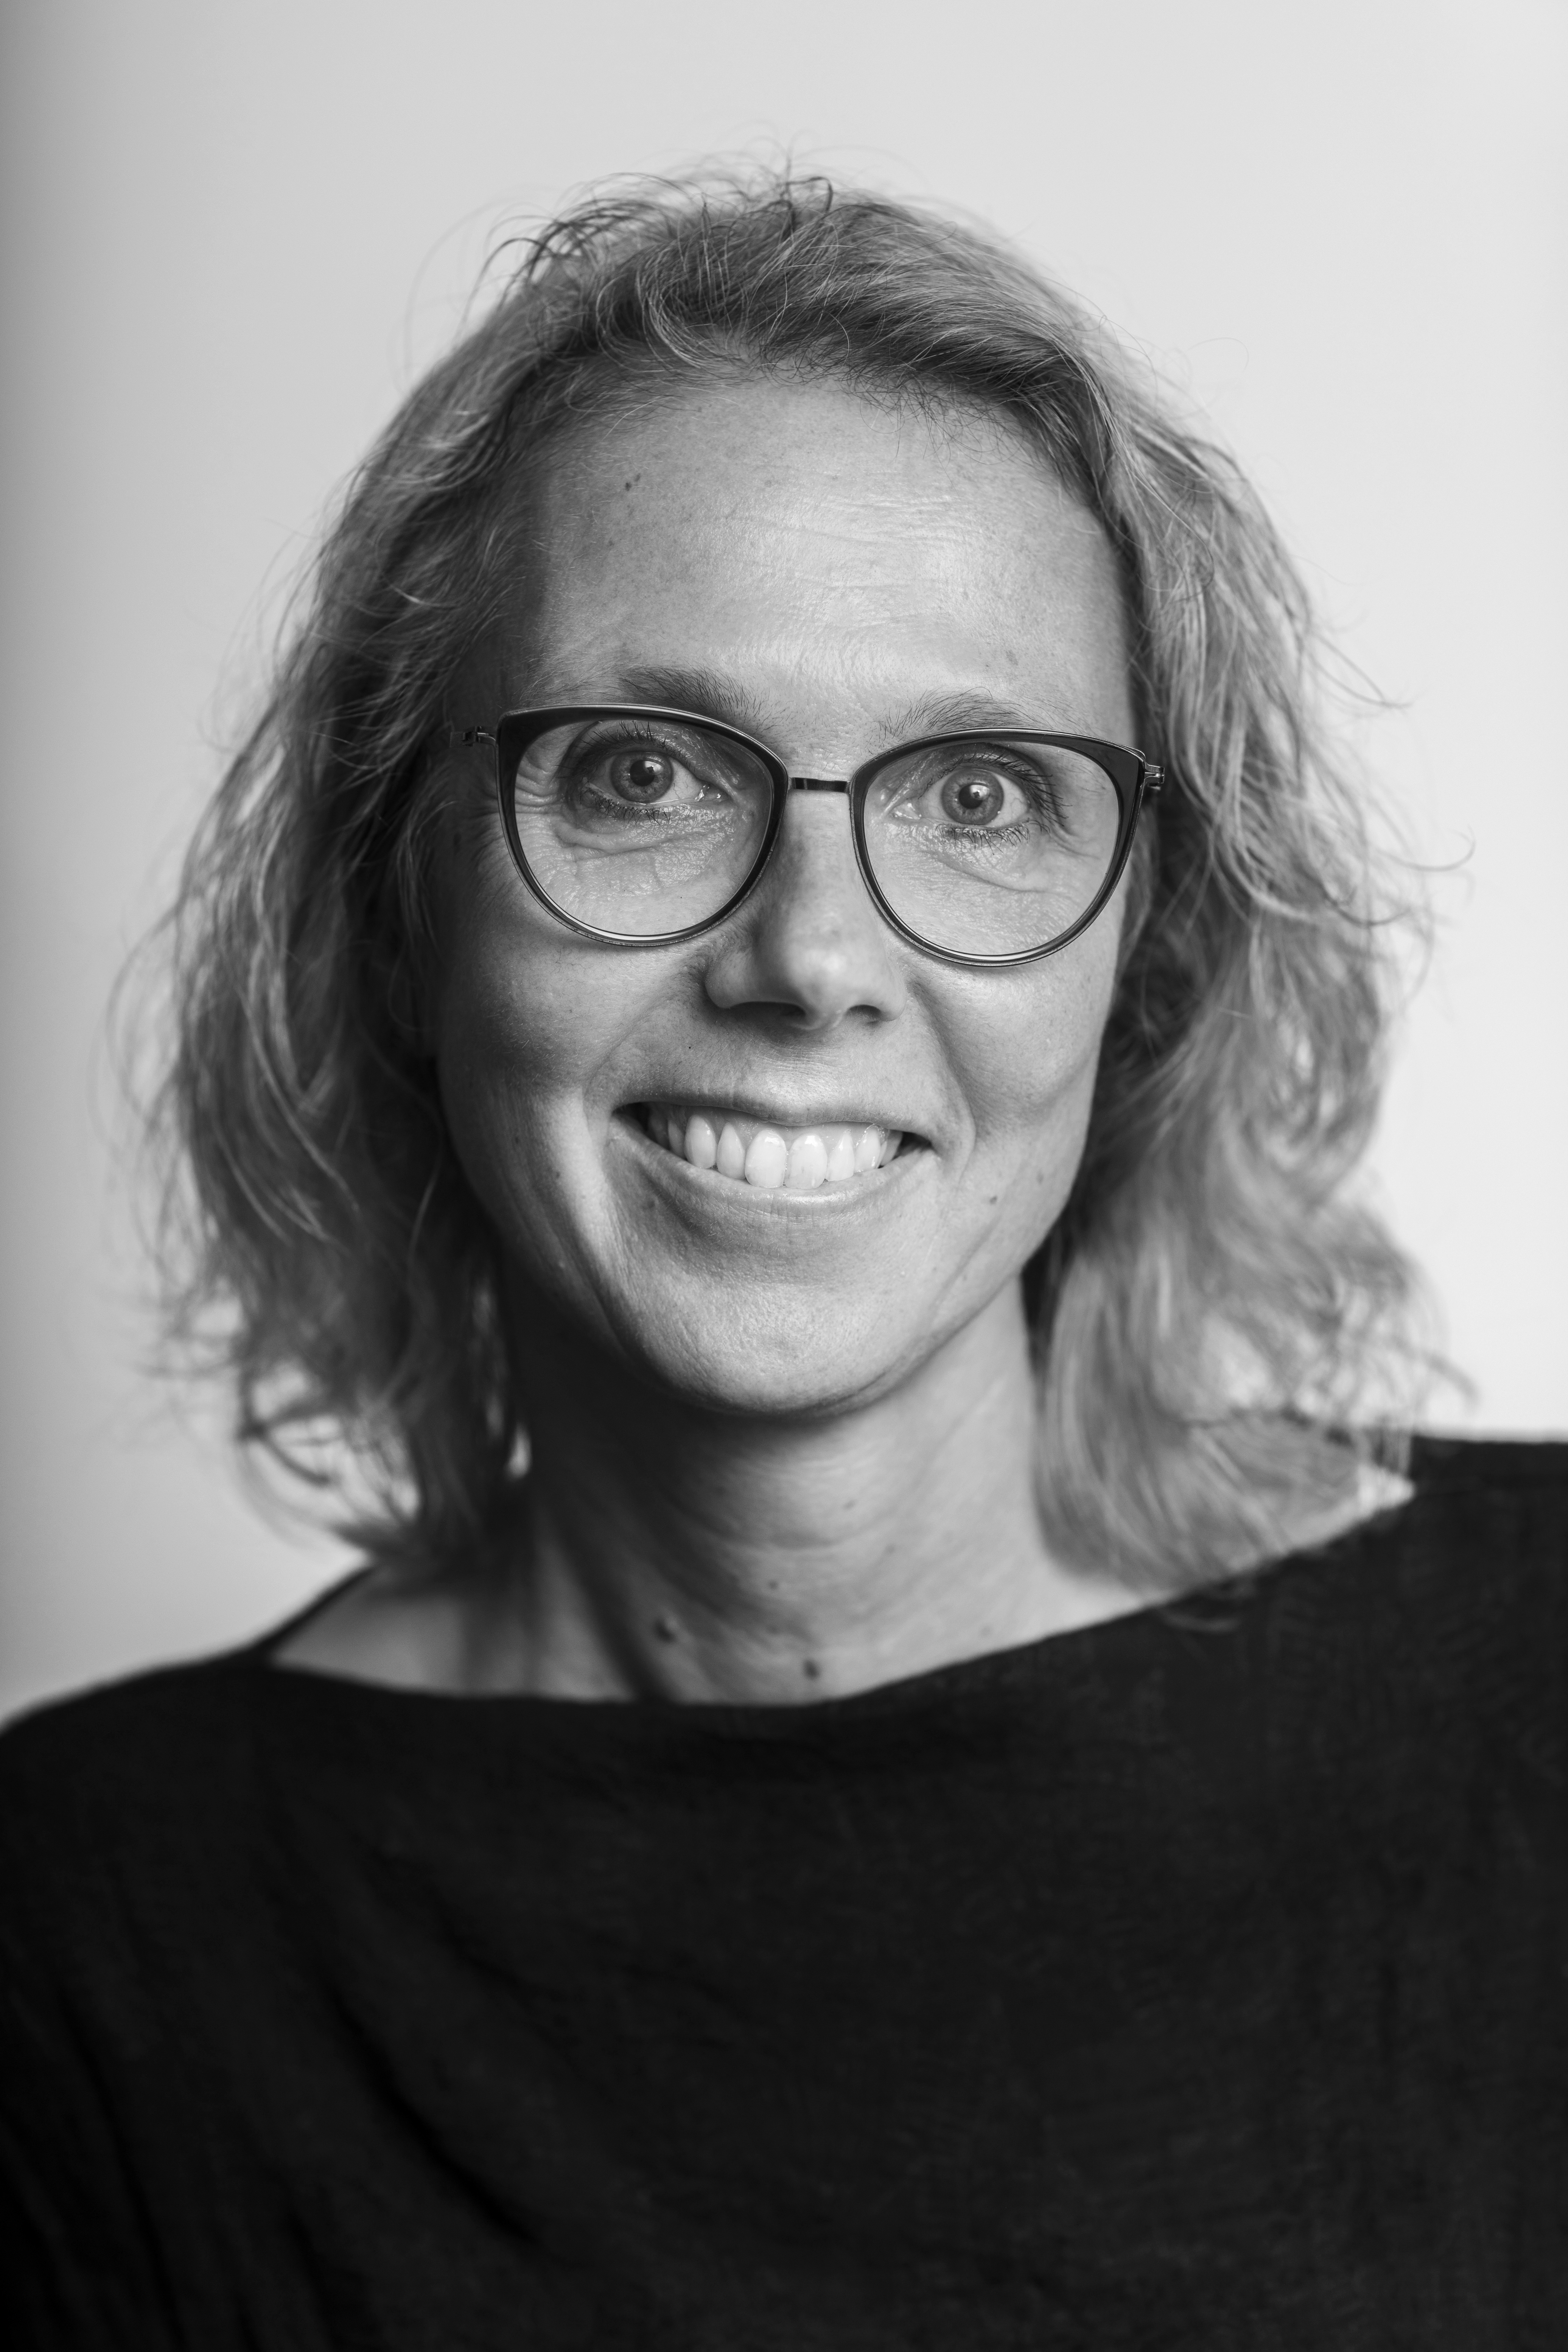 Portræt af Pernille Boye Koch i sort/hvid